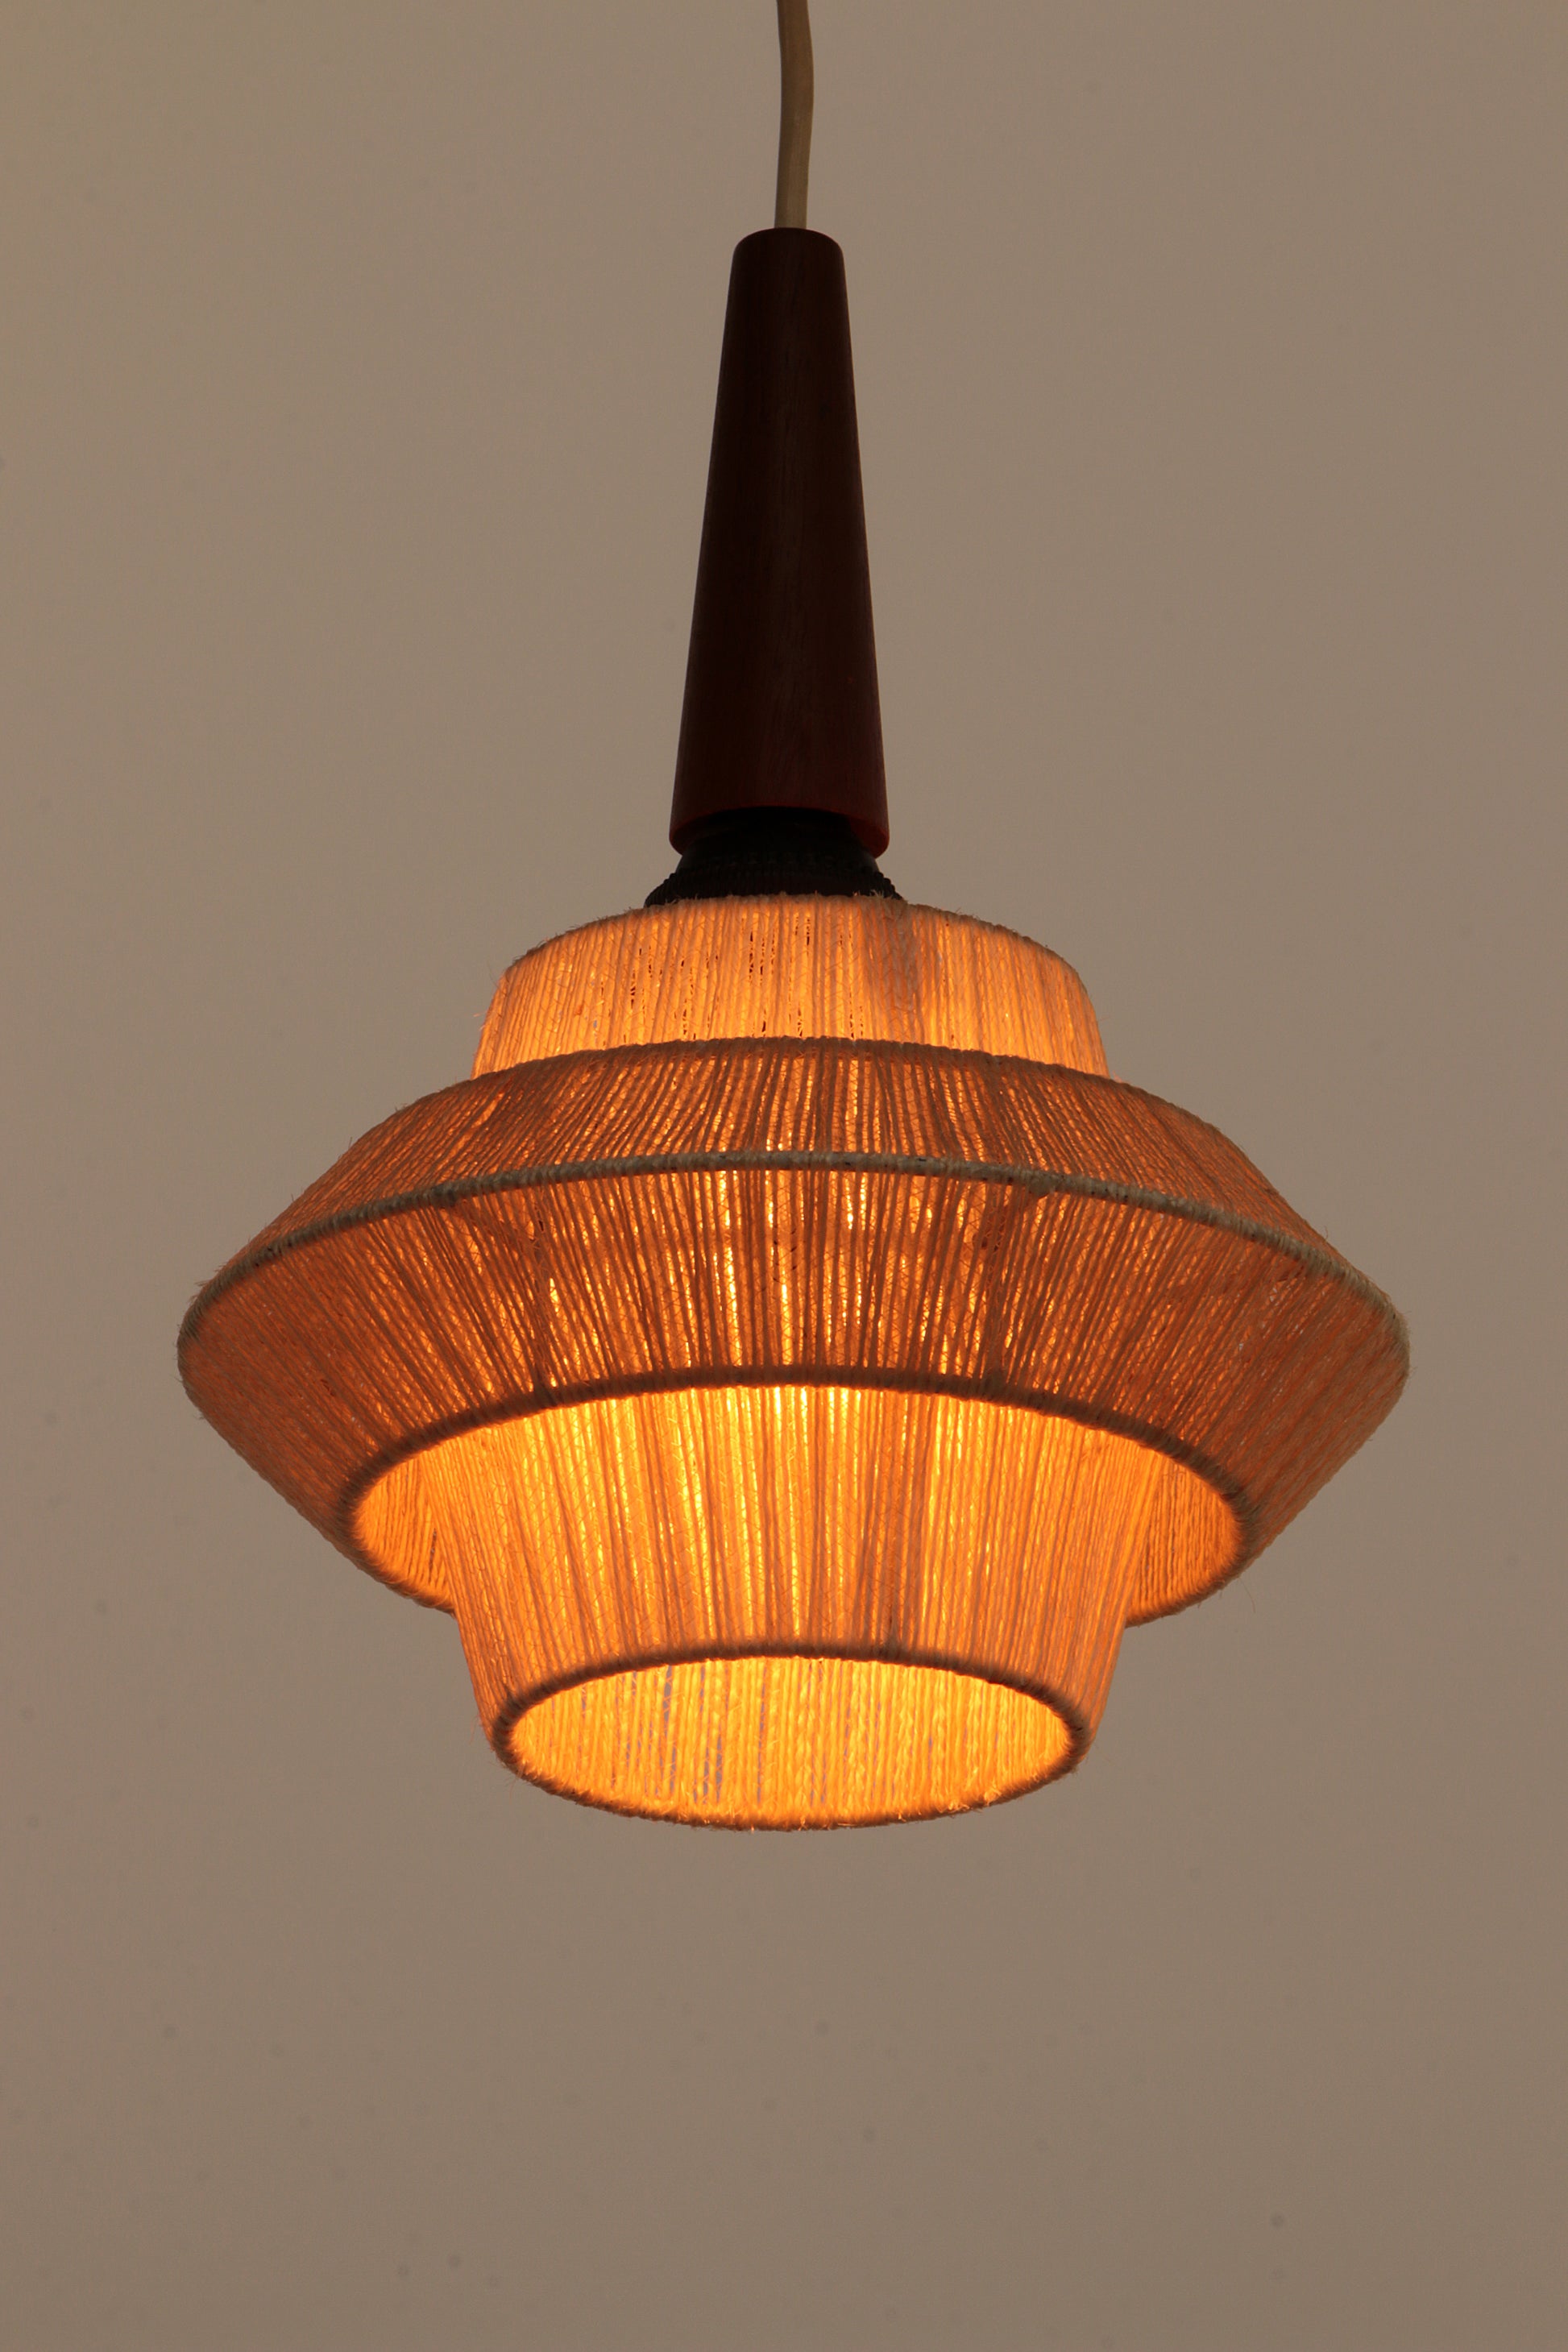 Vintage Hanglamp gemaakt van touw en teak,1960 Zweden.